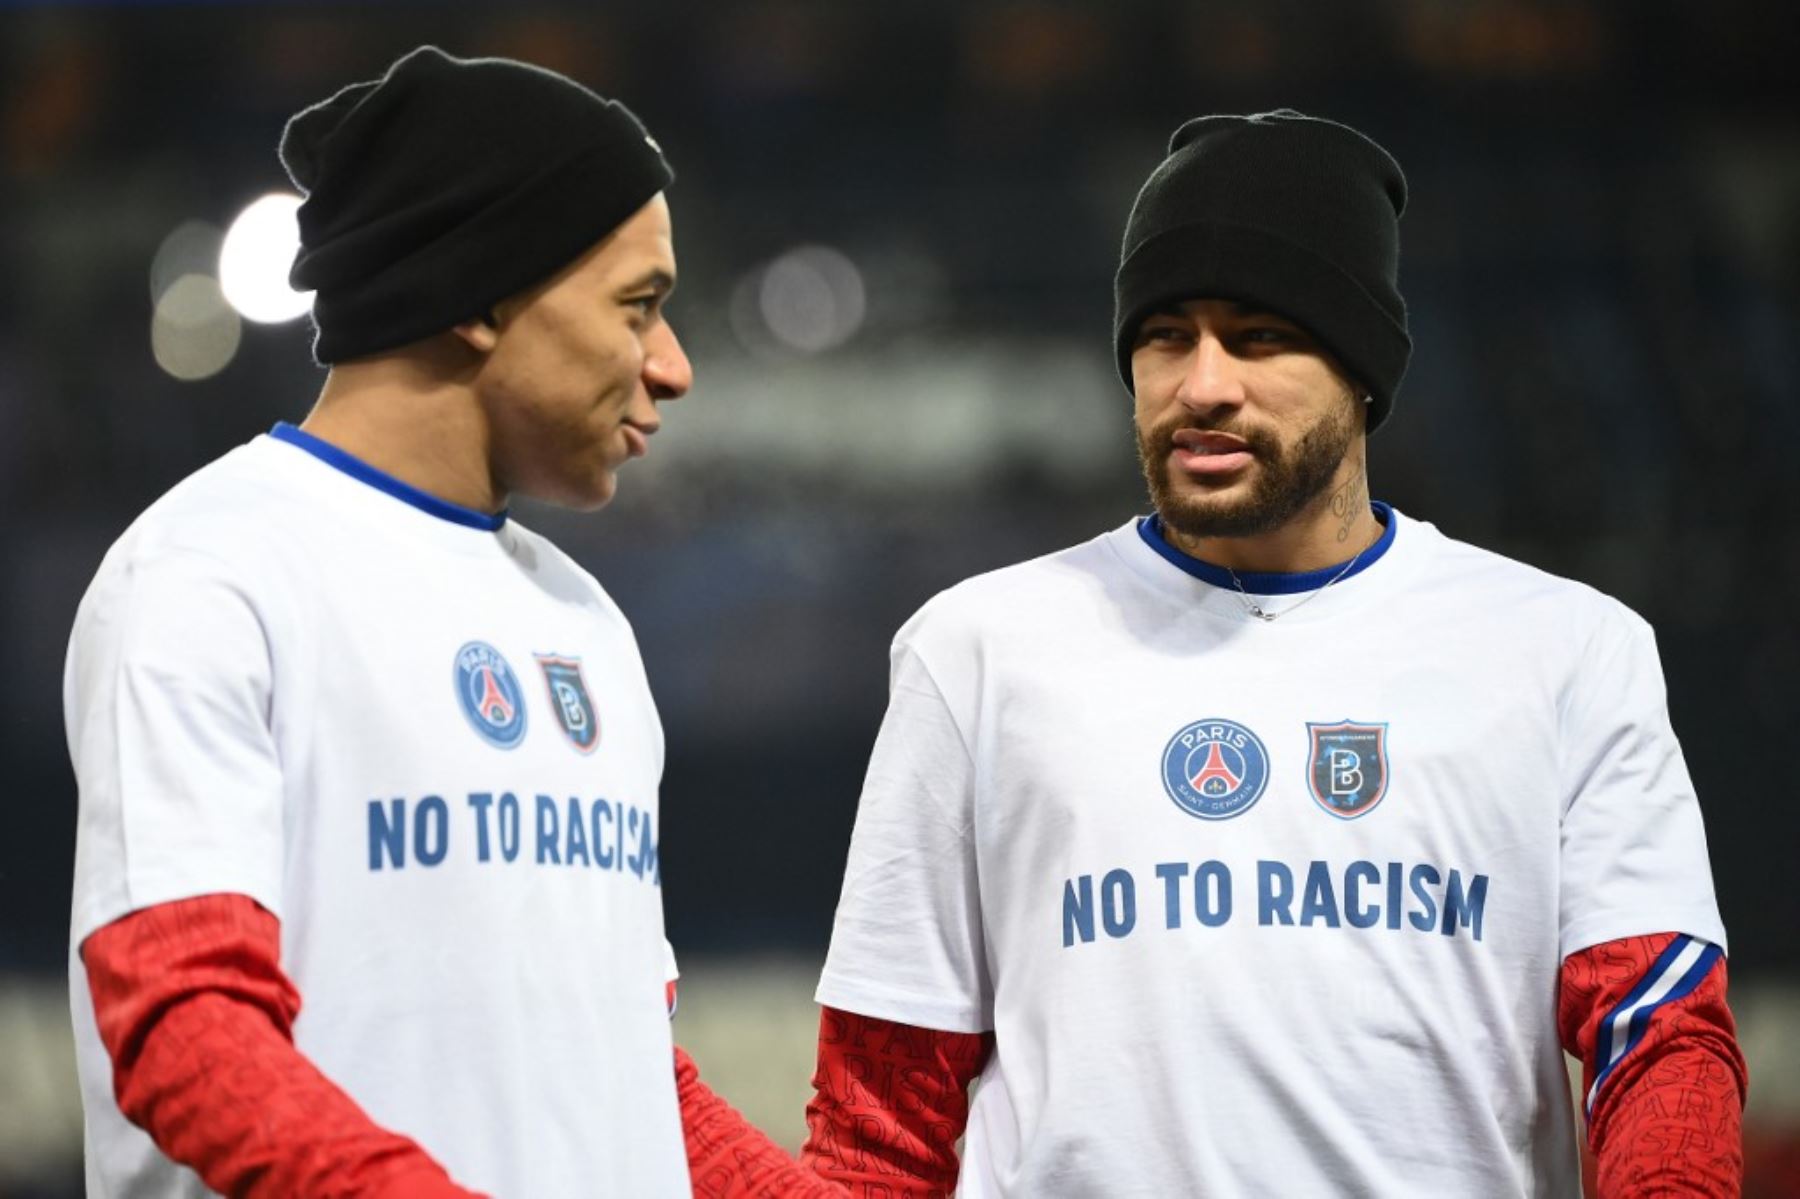 Jugadores de PSG y Basaksehir unidos contra el racismo